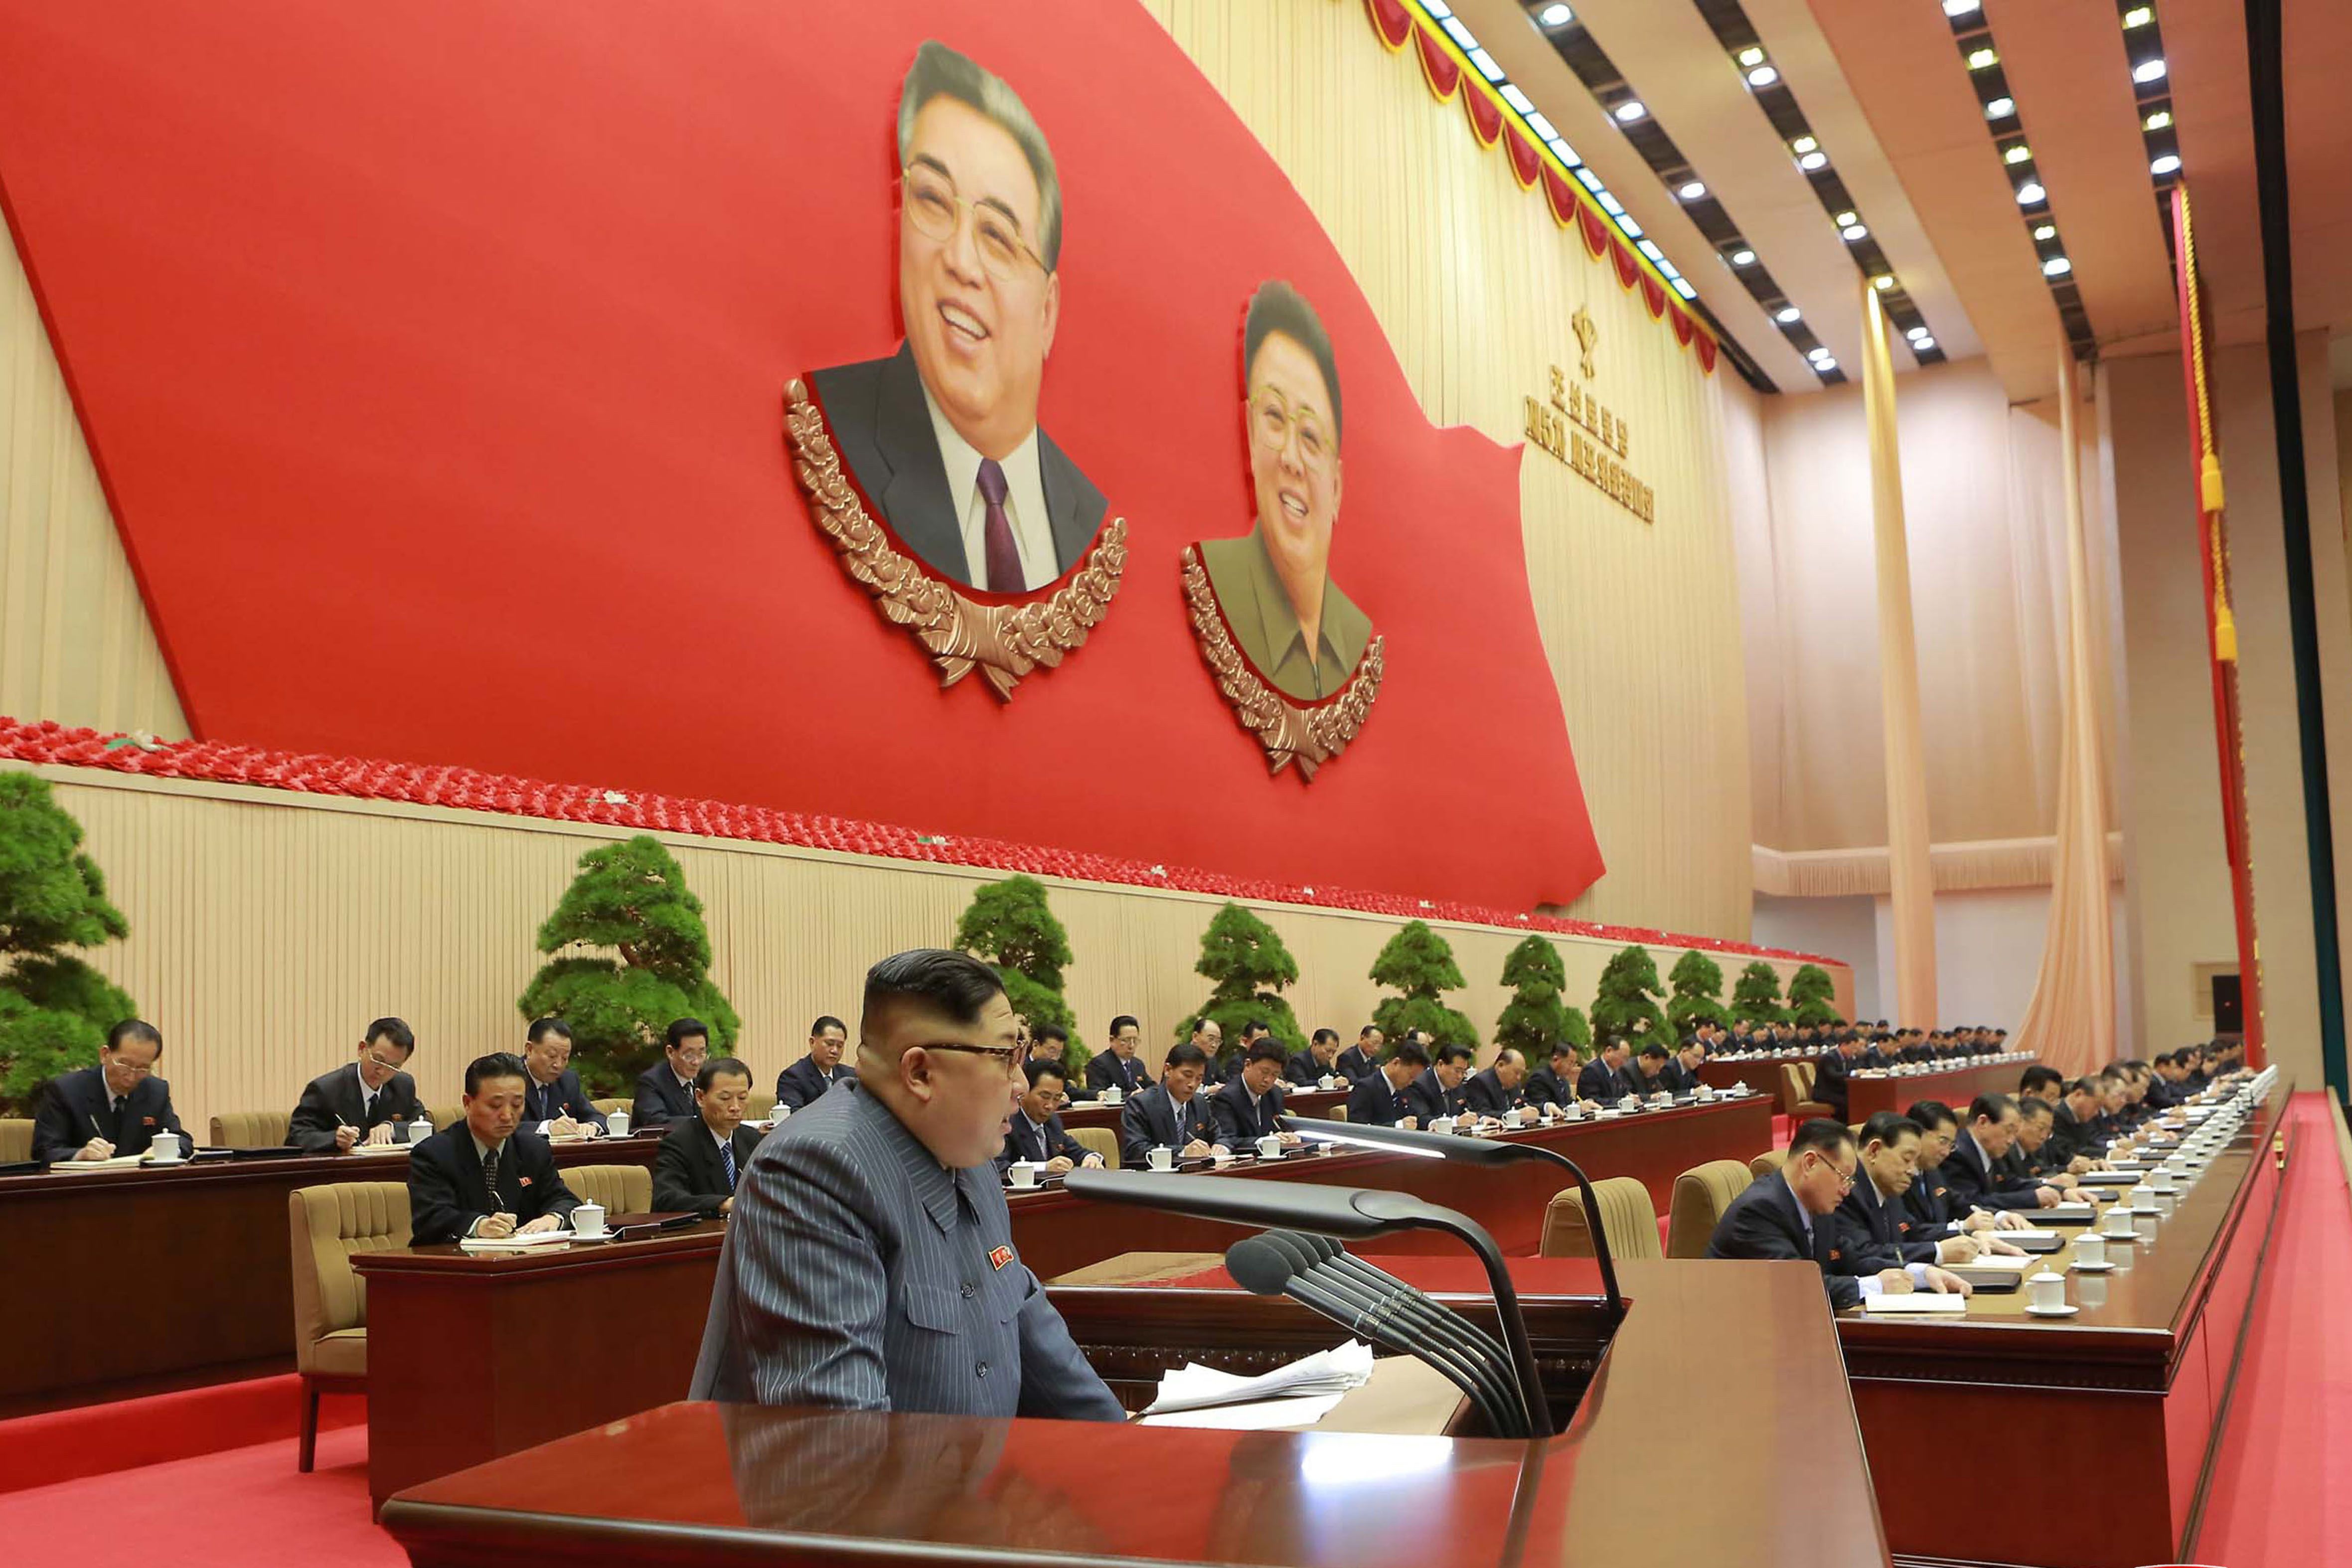 كلمة زعيم كوريا الشمالية كيم جونغ أون